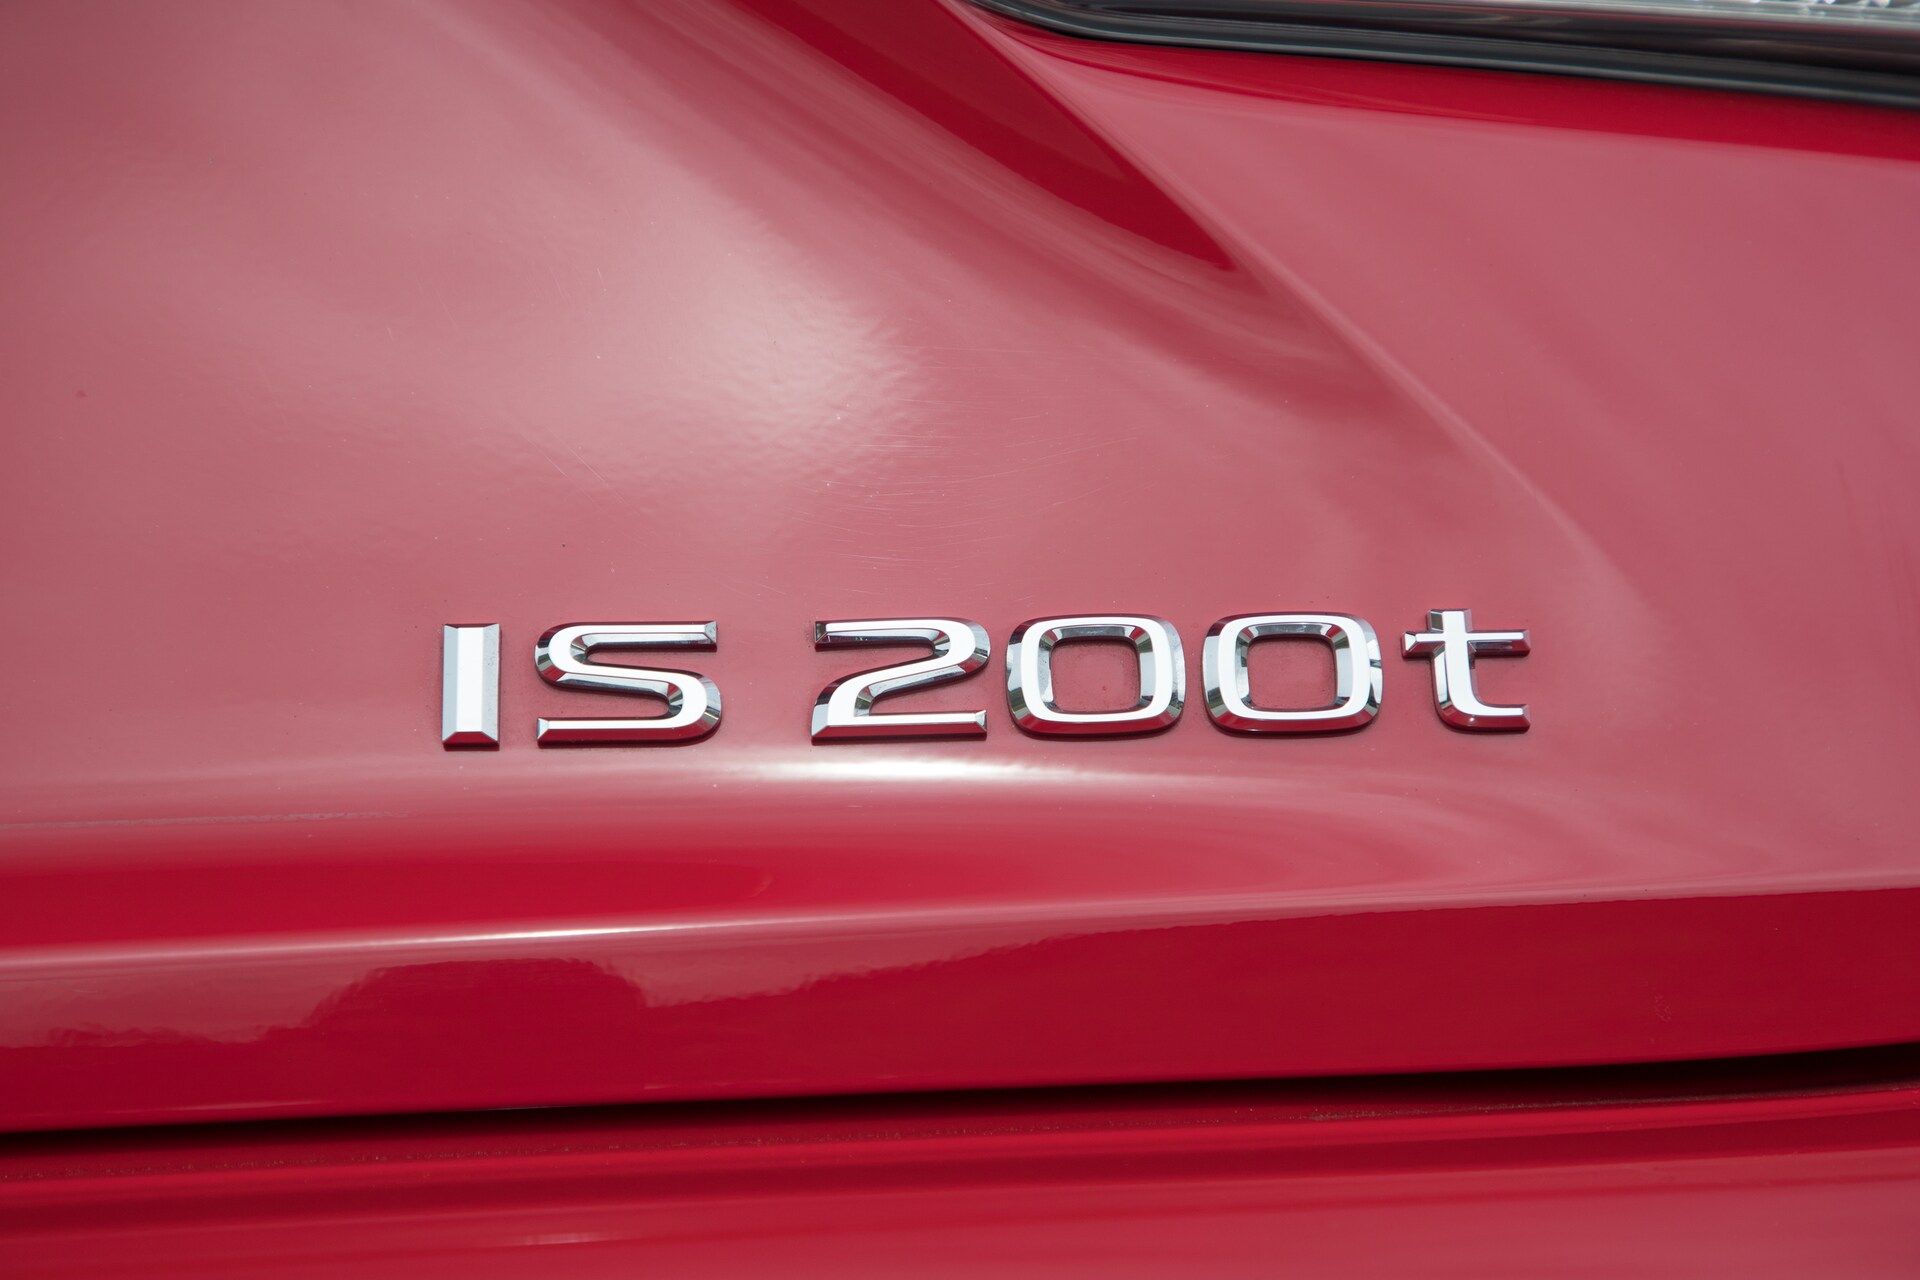 2017 Lexus Is 200t Badge 02 (Gallery 32 of 51)